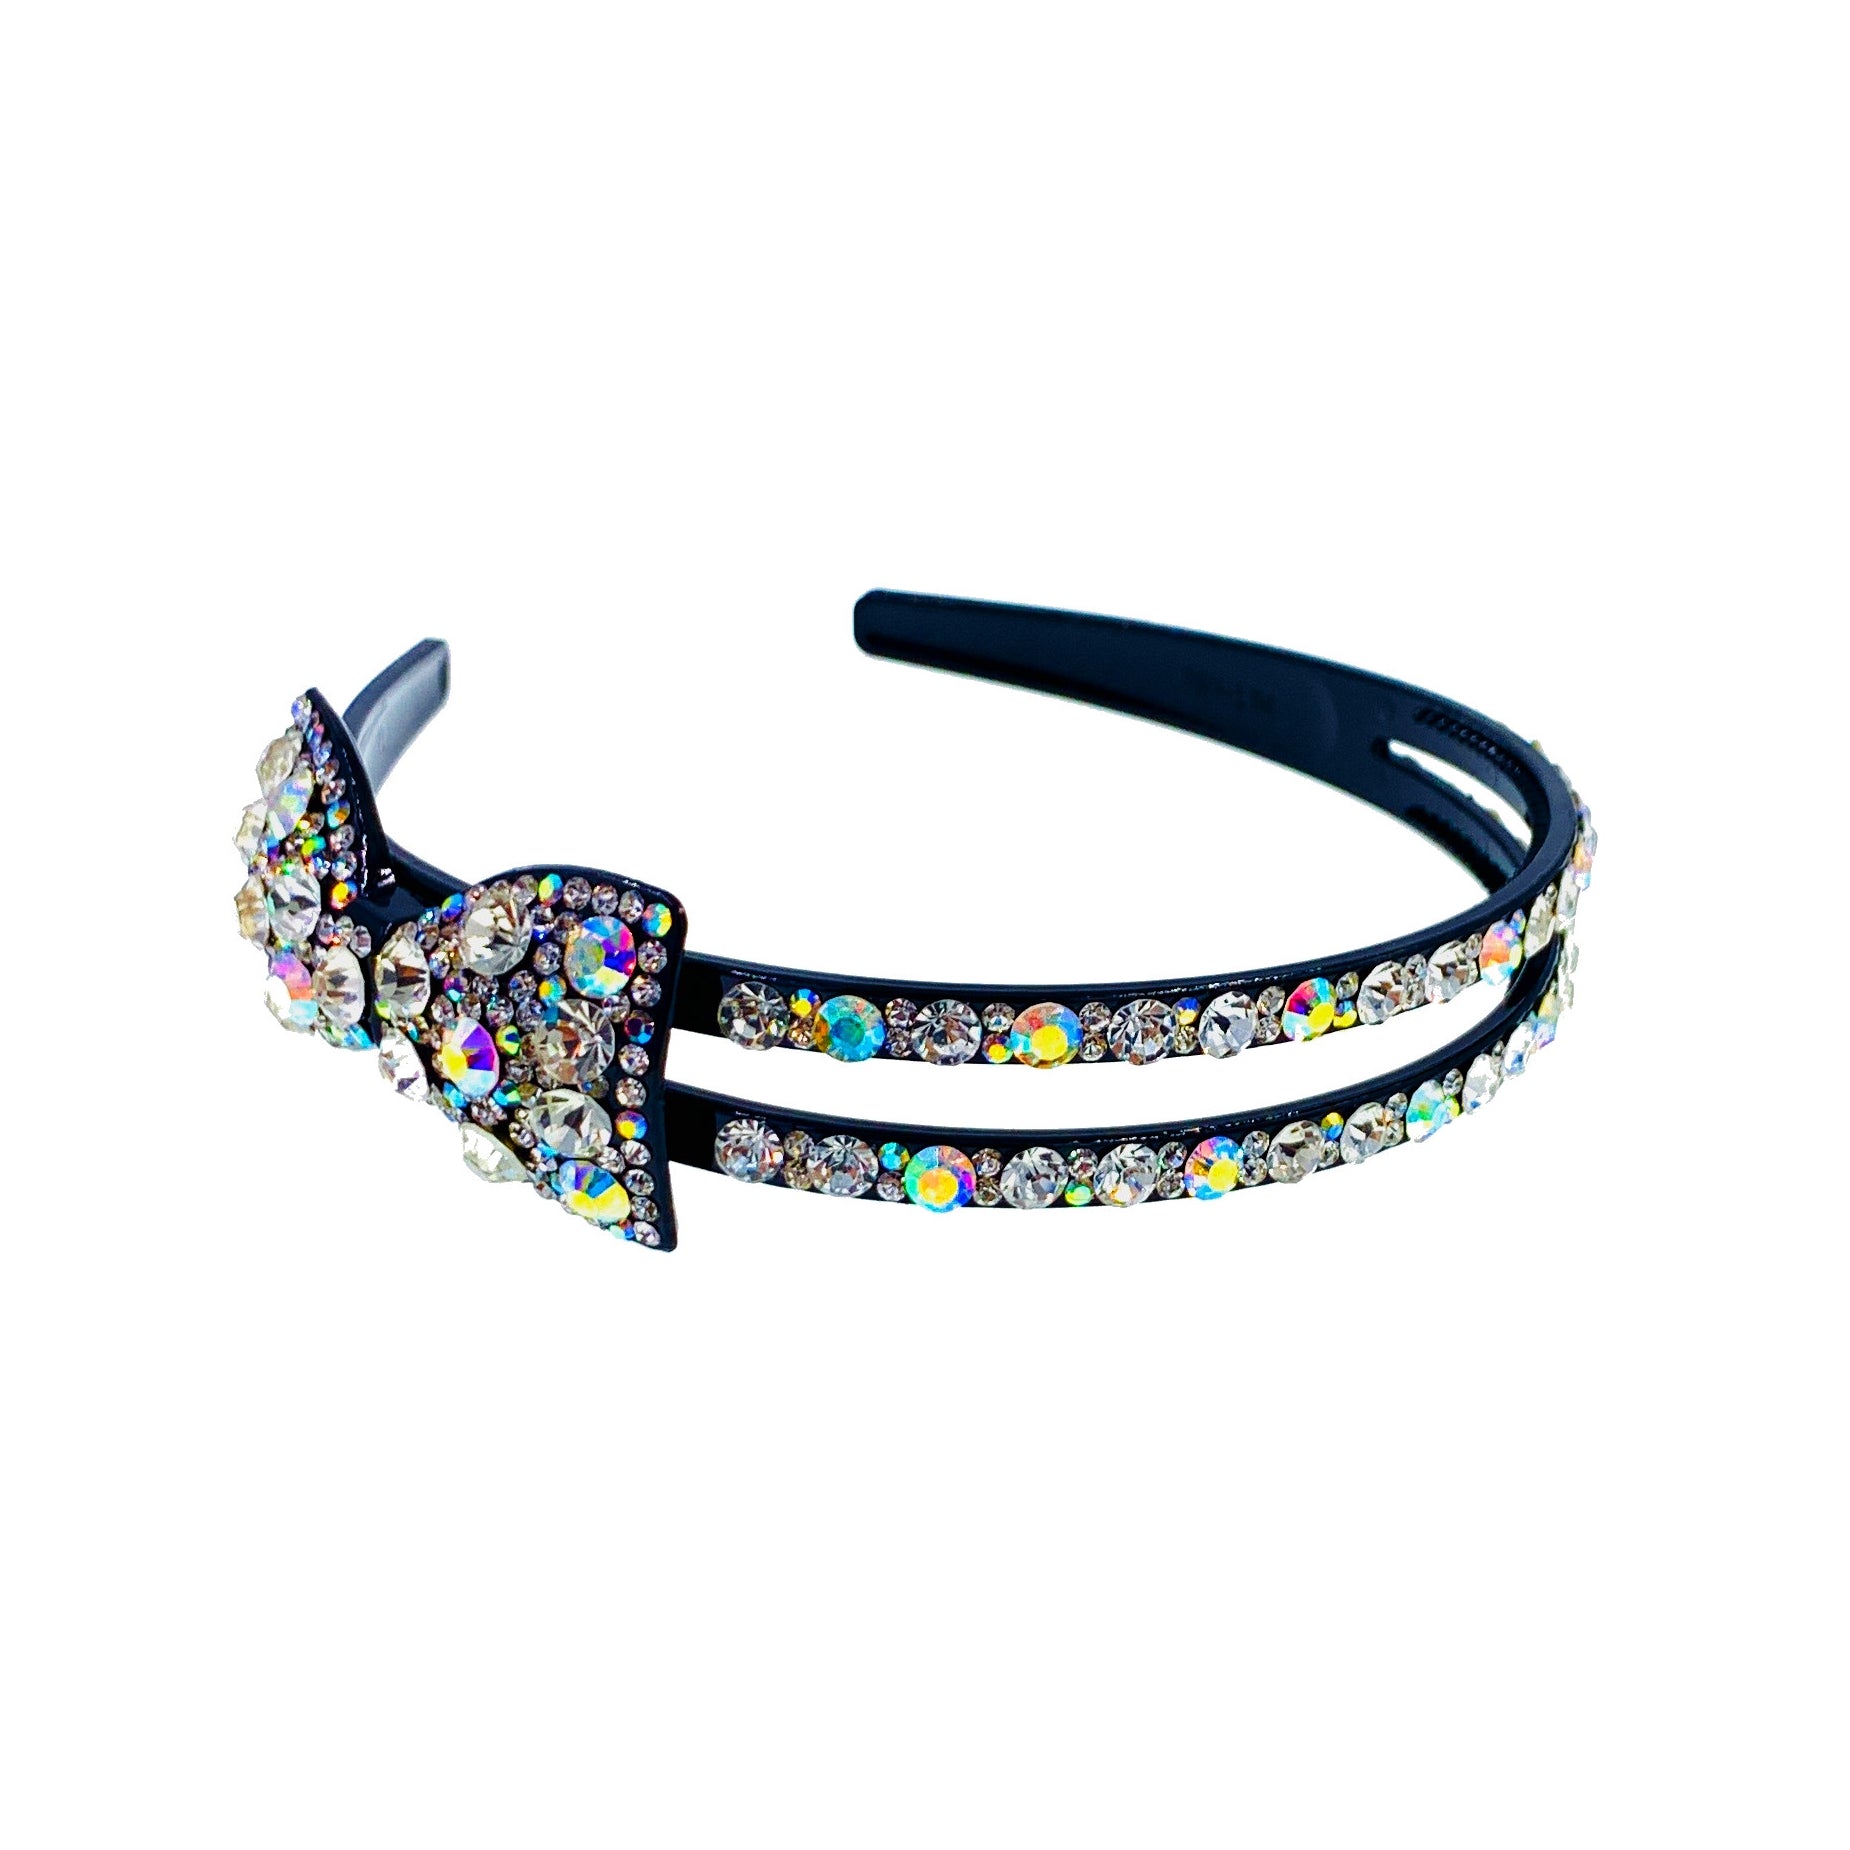 Orsina Bow Handmade Acrylic Rhinestone Crystals Headband Hairband Prom Party Gift, Headband - MOGHANT